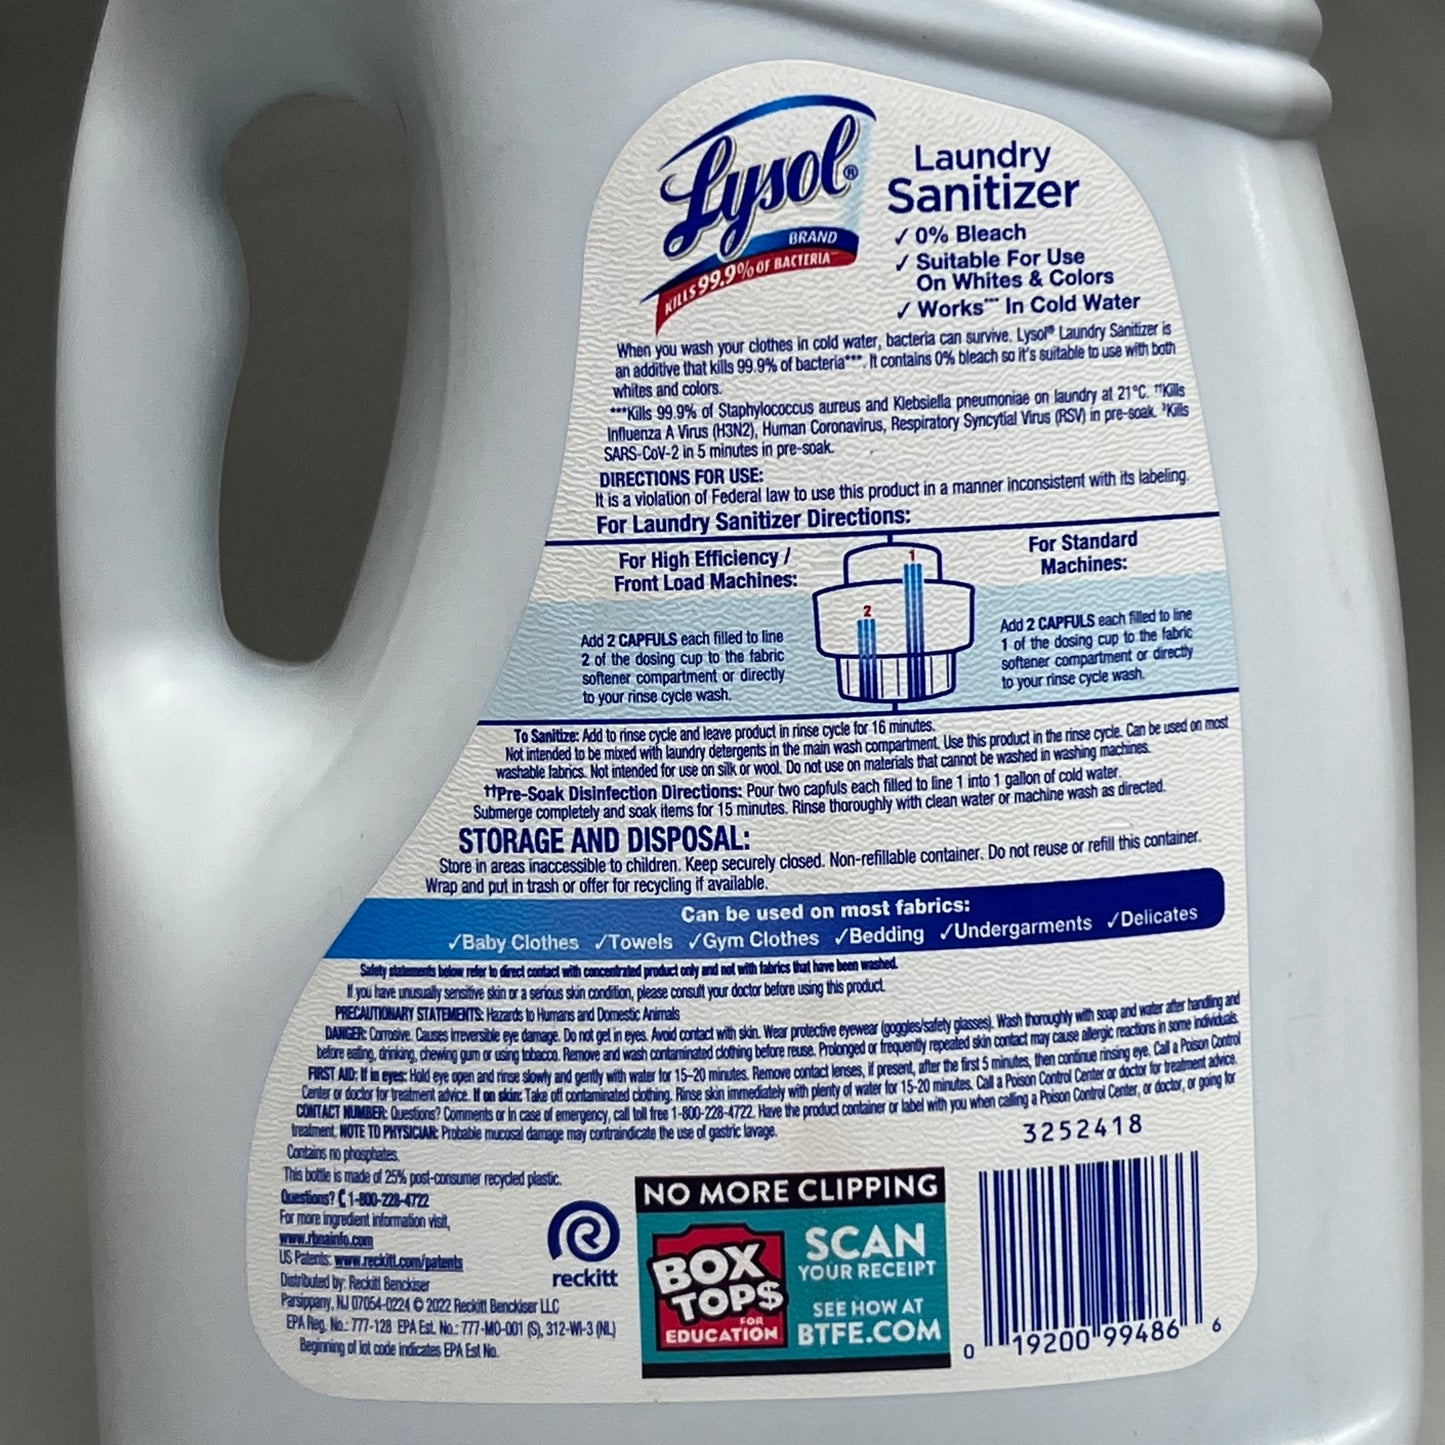 LYSOL (2 pack) Laundry Sanitizer 0% Bleach Crisp Linen 150 FL.OZ